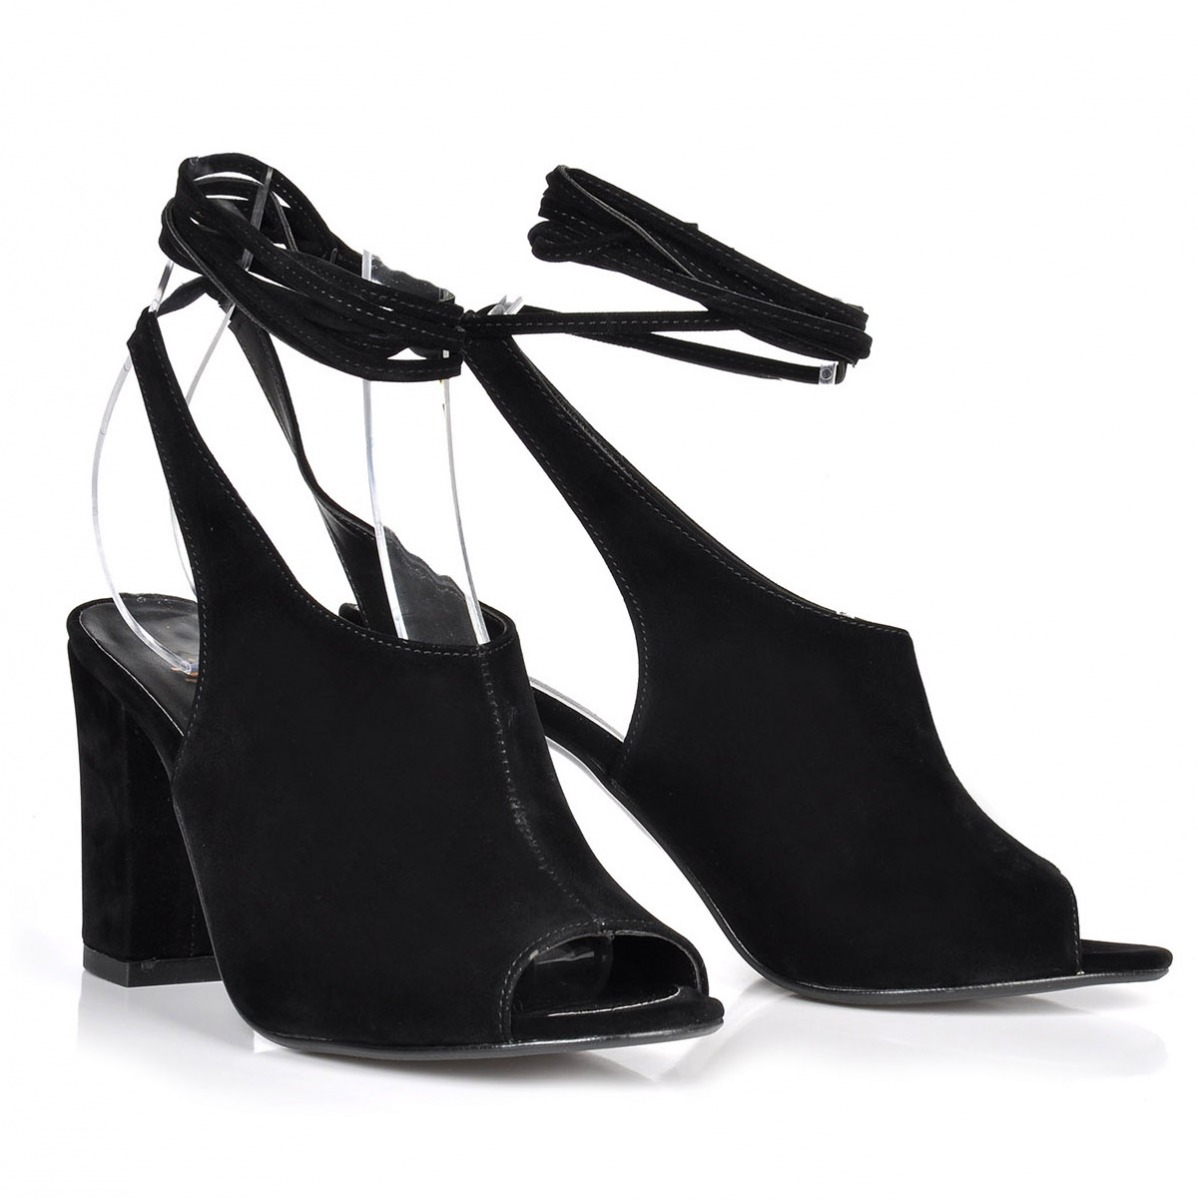 Flo Kadın  Siyah-Süet Klasik Topuklu Ayakkabı VZN-273Y. 4